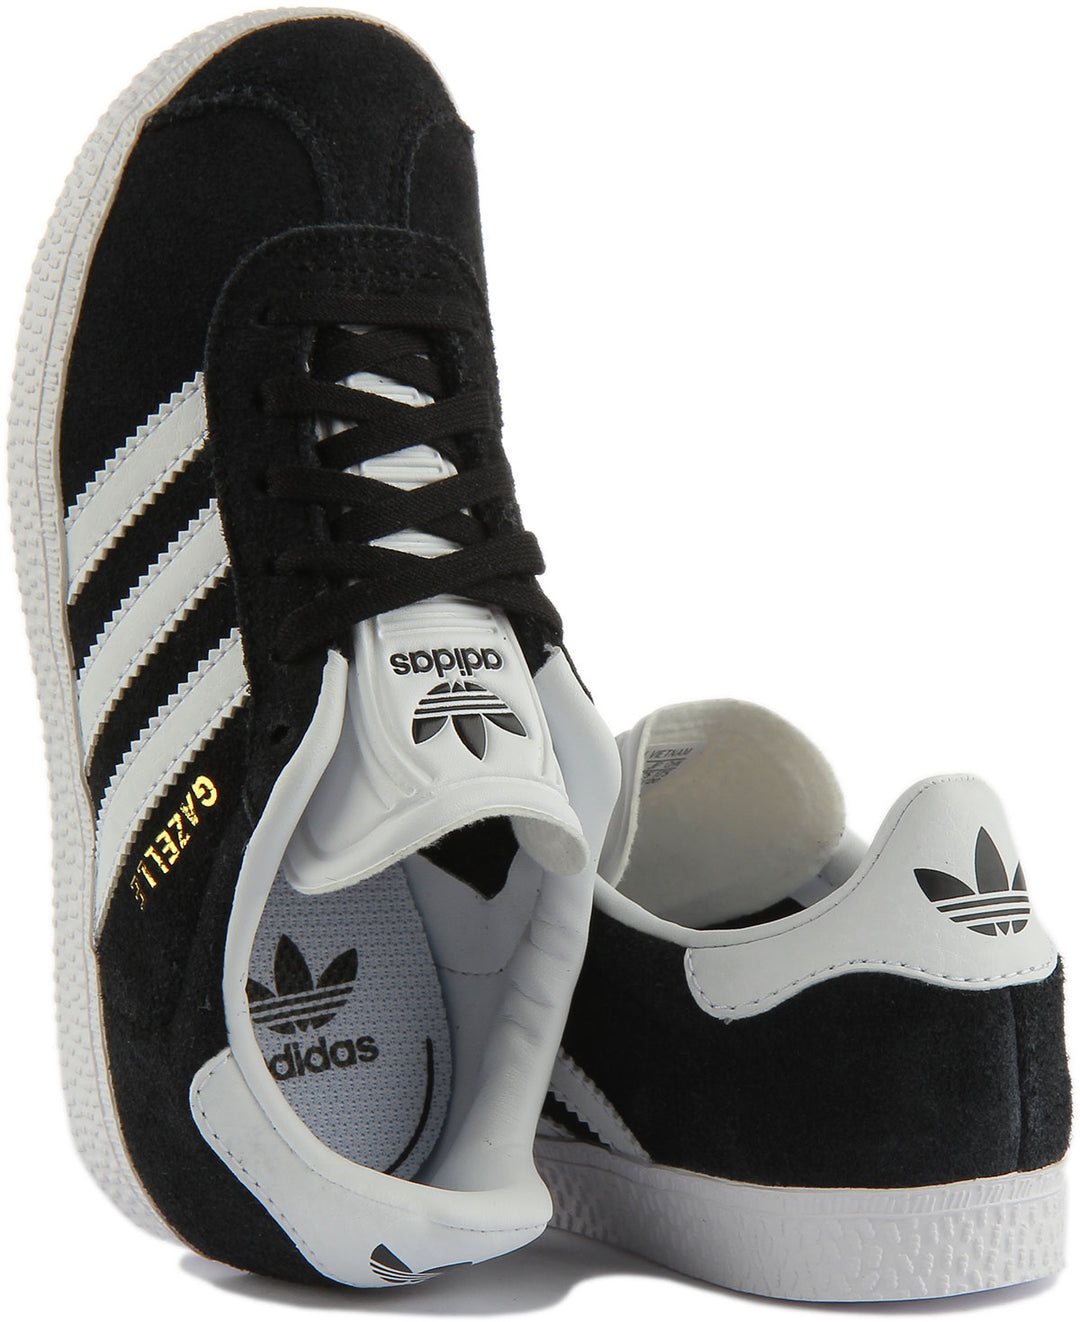 Adidas Gazelle C Scarpe da ginnastica in pelle scamosciata per bambini in nero bianco